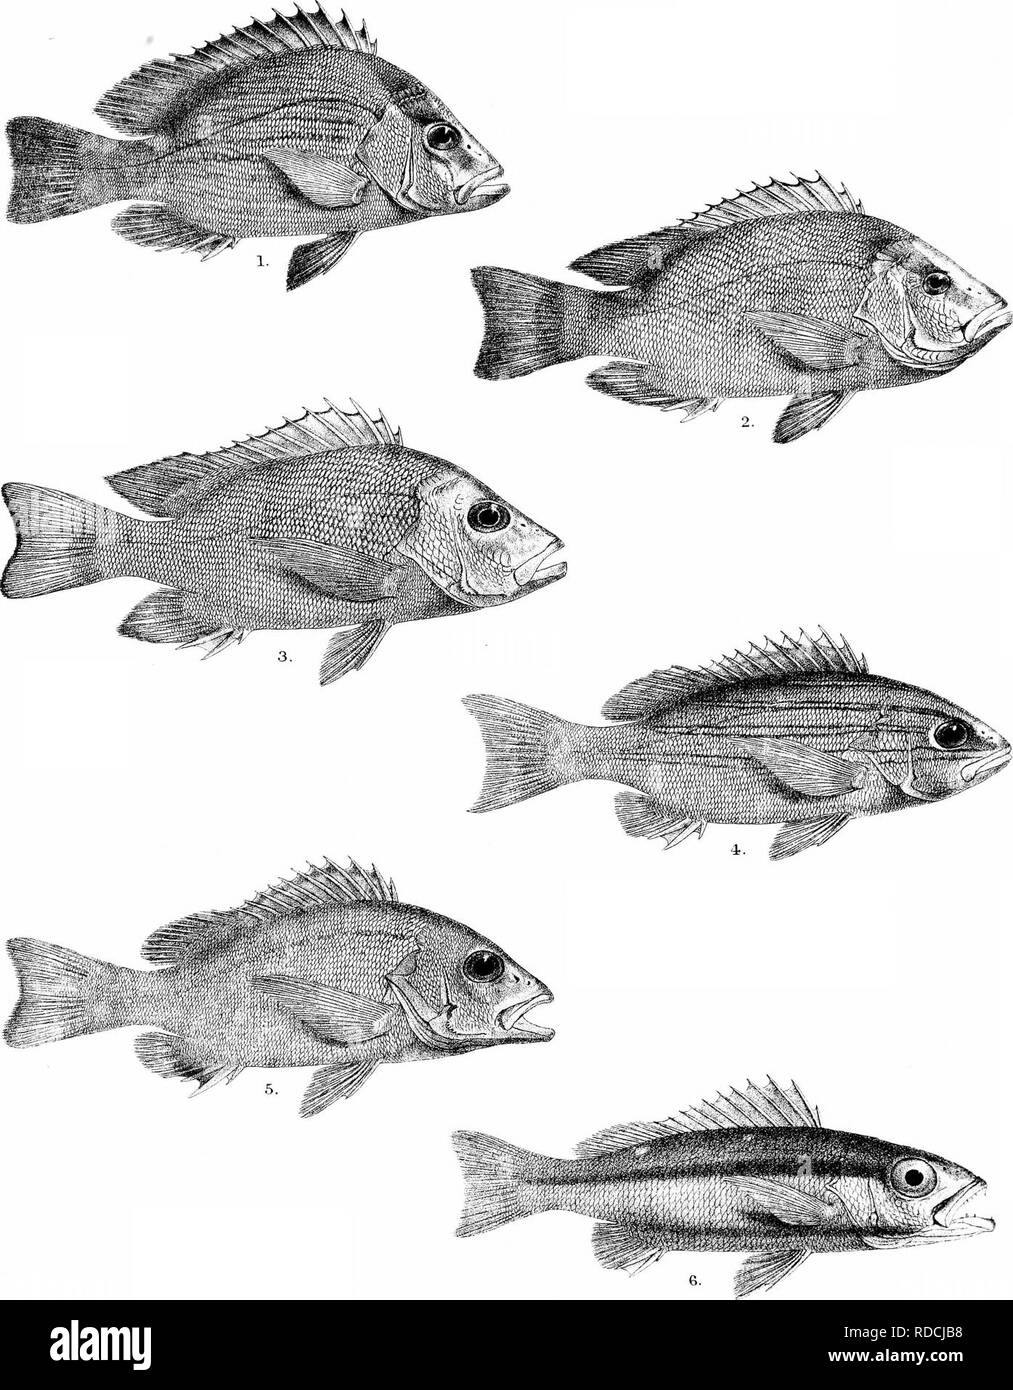 . Die Fische von Indien; eine Naturgeschichte der Fische bekannt, die Meere und Binnengewässer von Indien, Birma zu bewohnen, und Ceylon. Fische. Tage Hslies von Indien Platte X. G, H Ford del. R Mmtern lith. Mmtem Bro: ITTjp 1, LUTIANUS ERYTHROPTERUS (YOUNO) 2, L. ERYTHROPTERUS (Erwachsene). 3, L DODECACANTHUS, 4. L. BENGALENSIS. 5, L. FULVUS. 6 BIGUTTATUS, L... Bitte beachten Sie, dass diese Bilder sind von der gescannten Seite Bilder, die digital für die Lesbarkeit verbessert haben mögen - Färbung und Aussehen dieser Abbildungen können nicht perfekt dem Original ähneln. extrahiert. Tag, Francis, 1829-1889. Londo Stockfoto